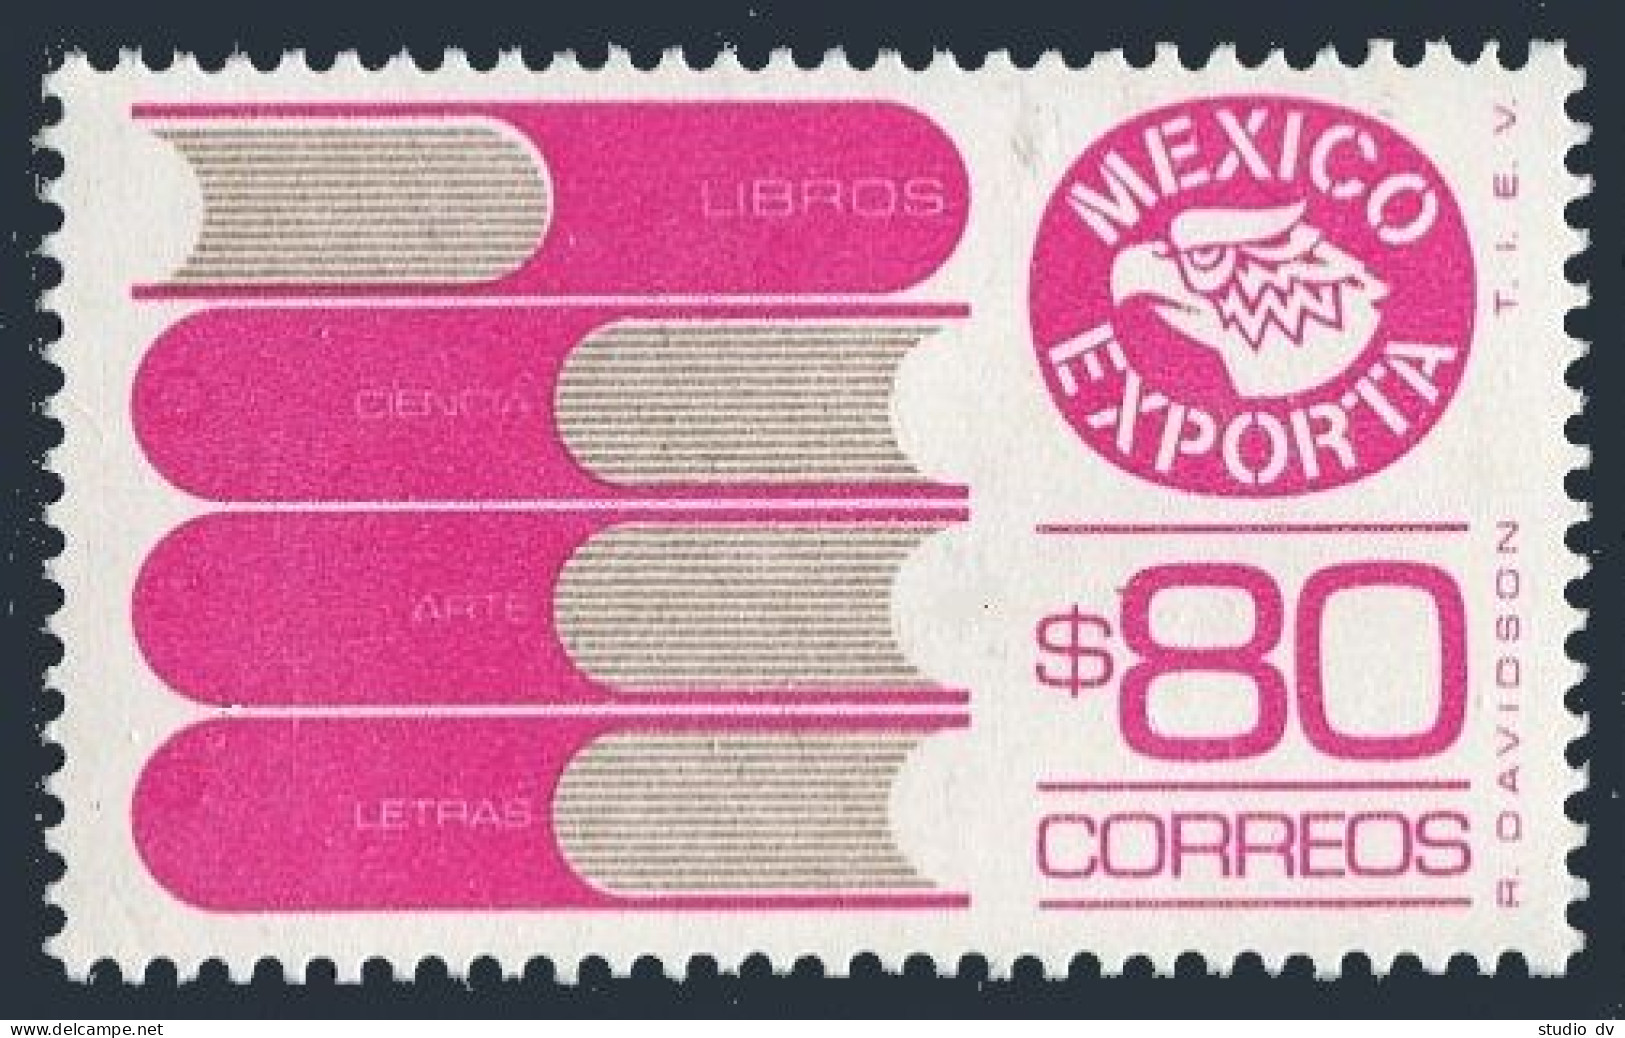 Mexico 1133A,MNH.Michel 1800A. Mexico Exports,1985. Books. - Mexico